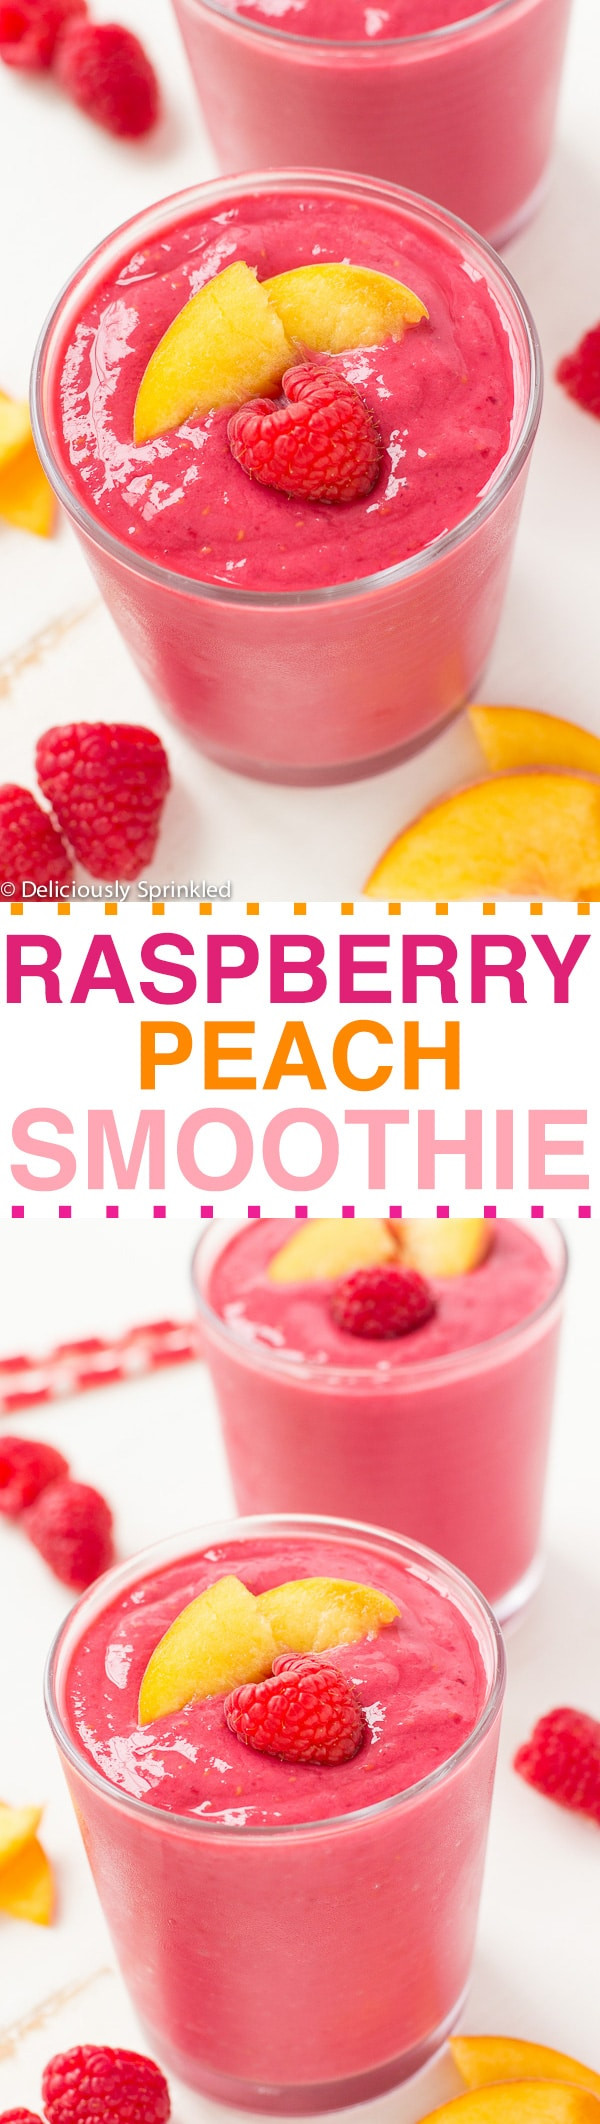 Raspberry Smoothie Recipes
 Raspberry Peach Smoothie